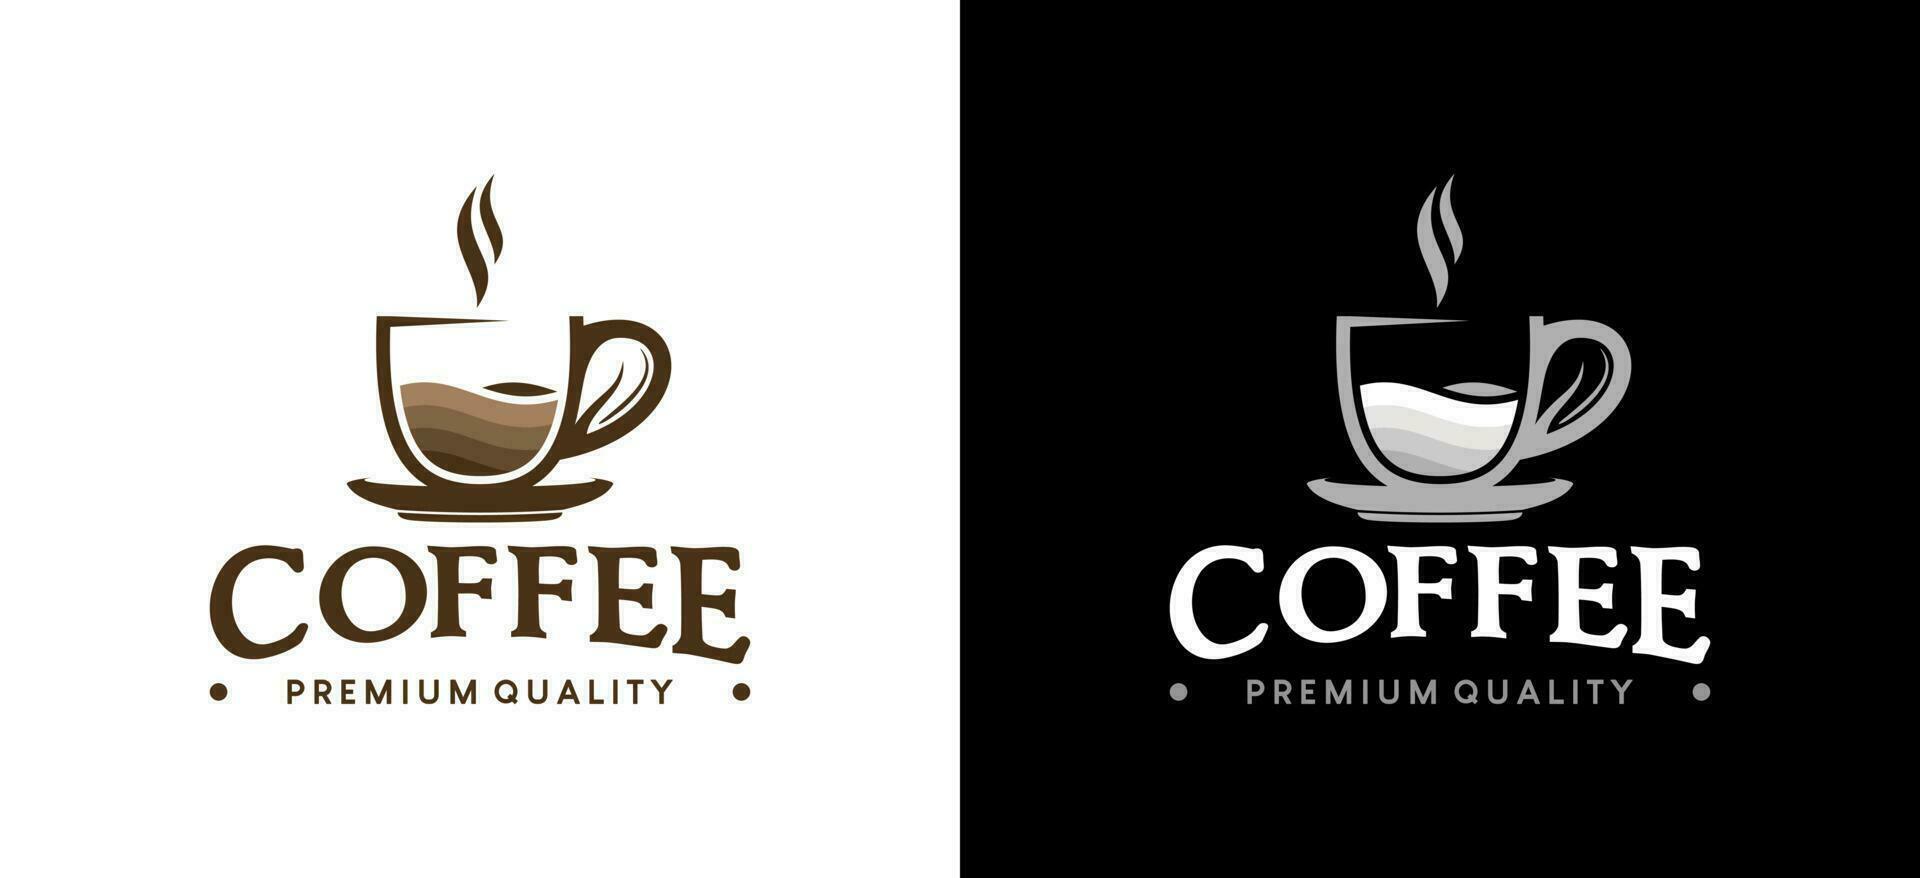 Coffee logo design with creative retro concept vector